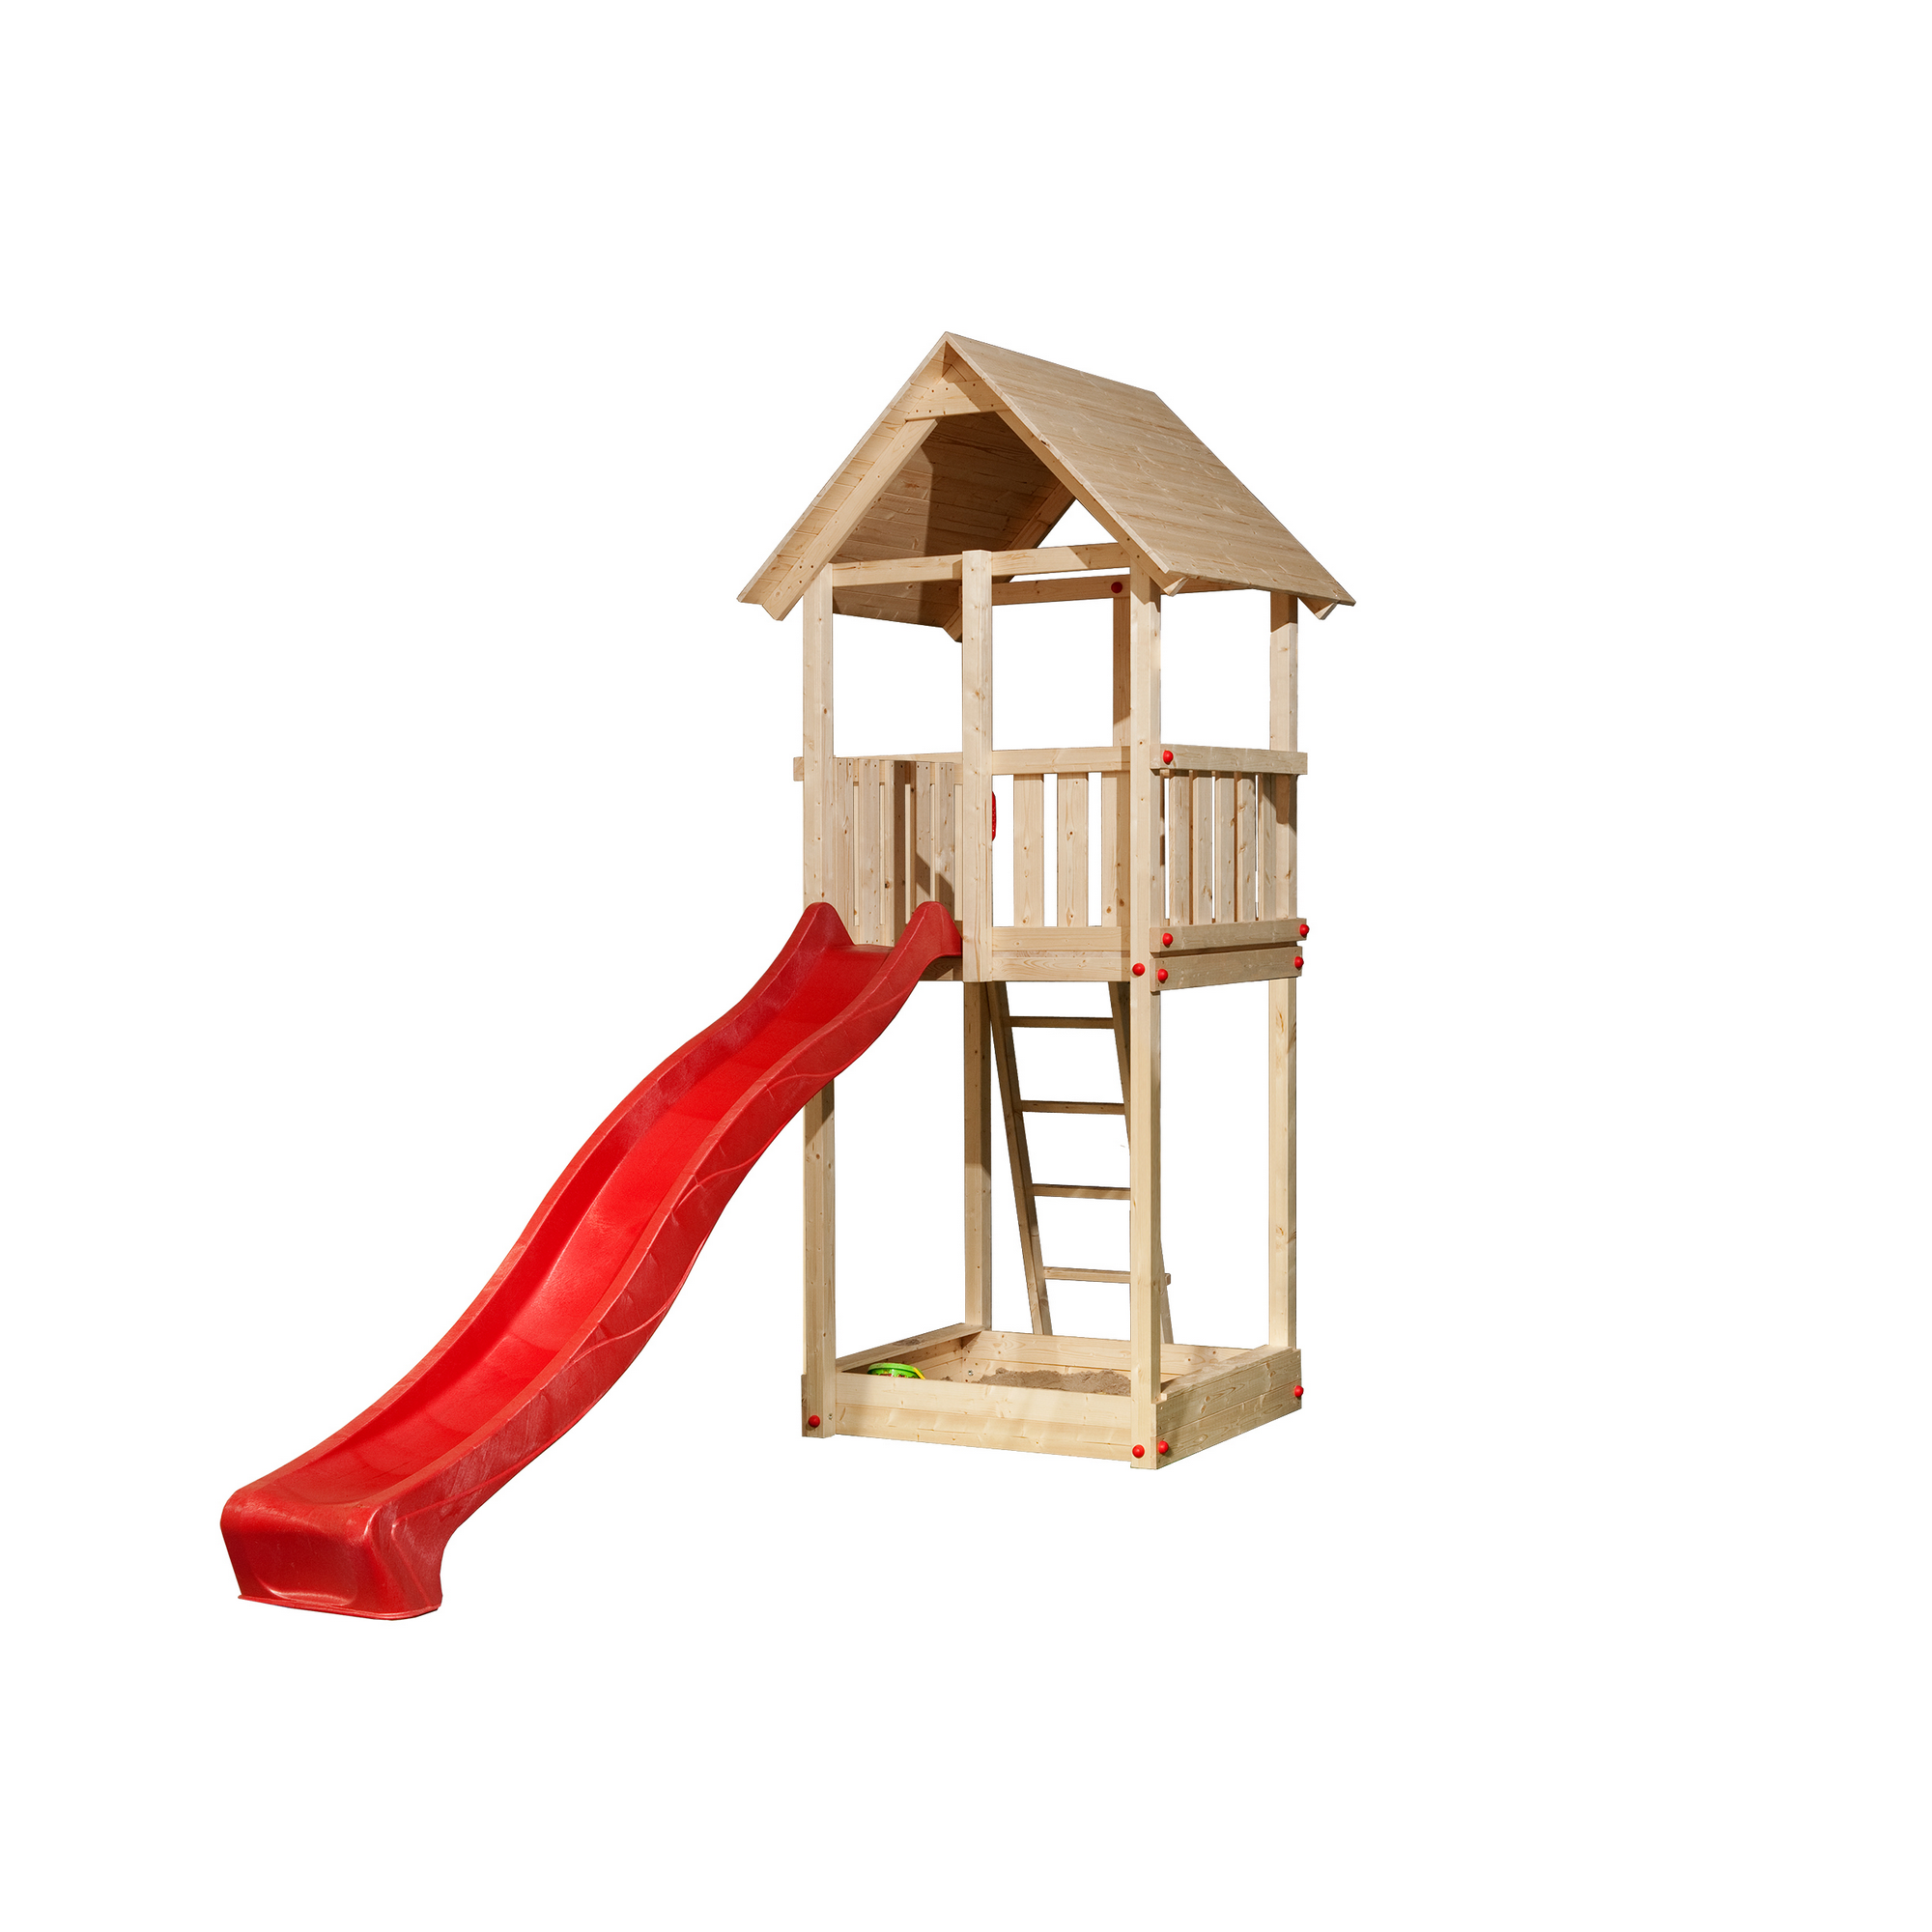 Spielturm 'Woody' mit Wasserrutsche, rot, 100 x 331 x 374 cm + product picture